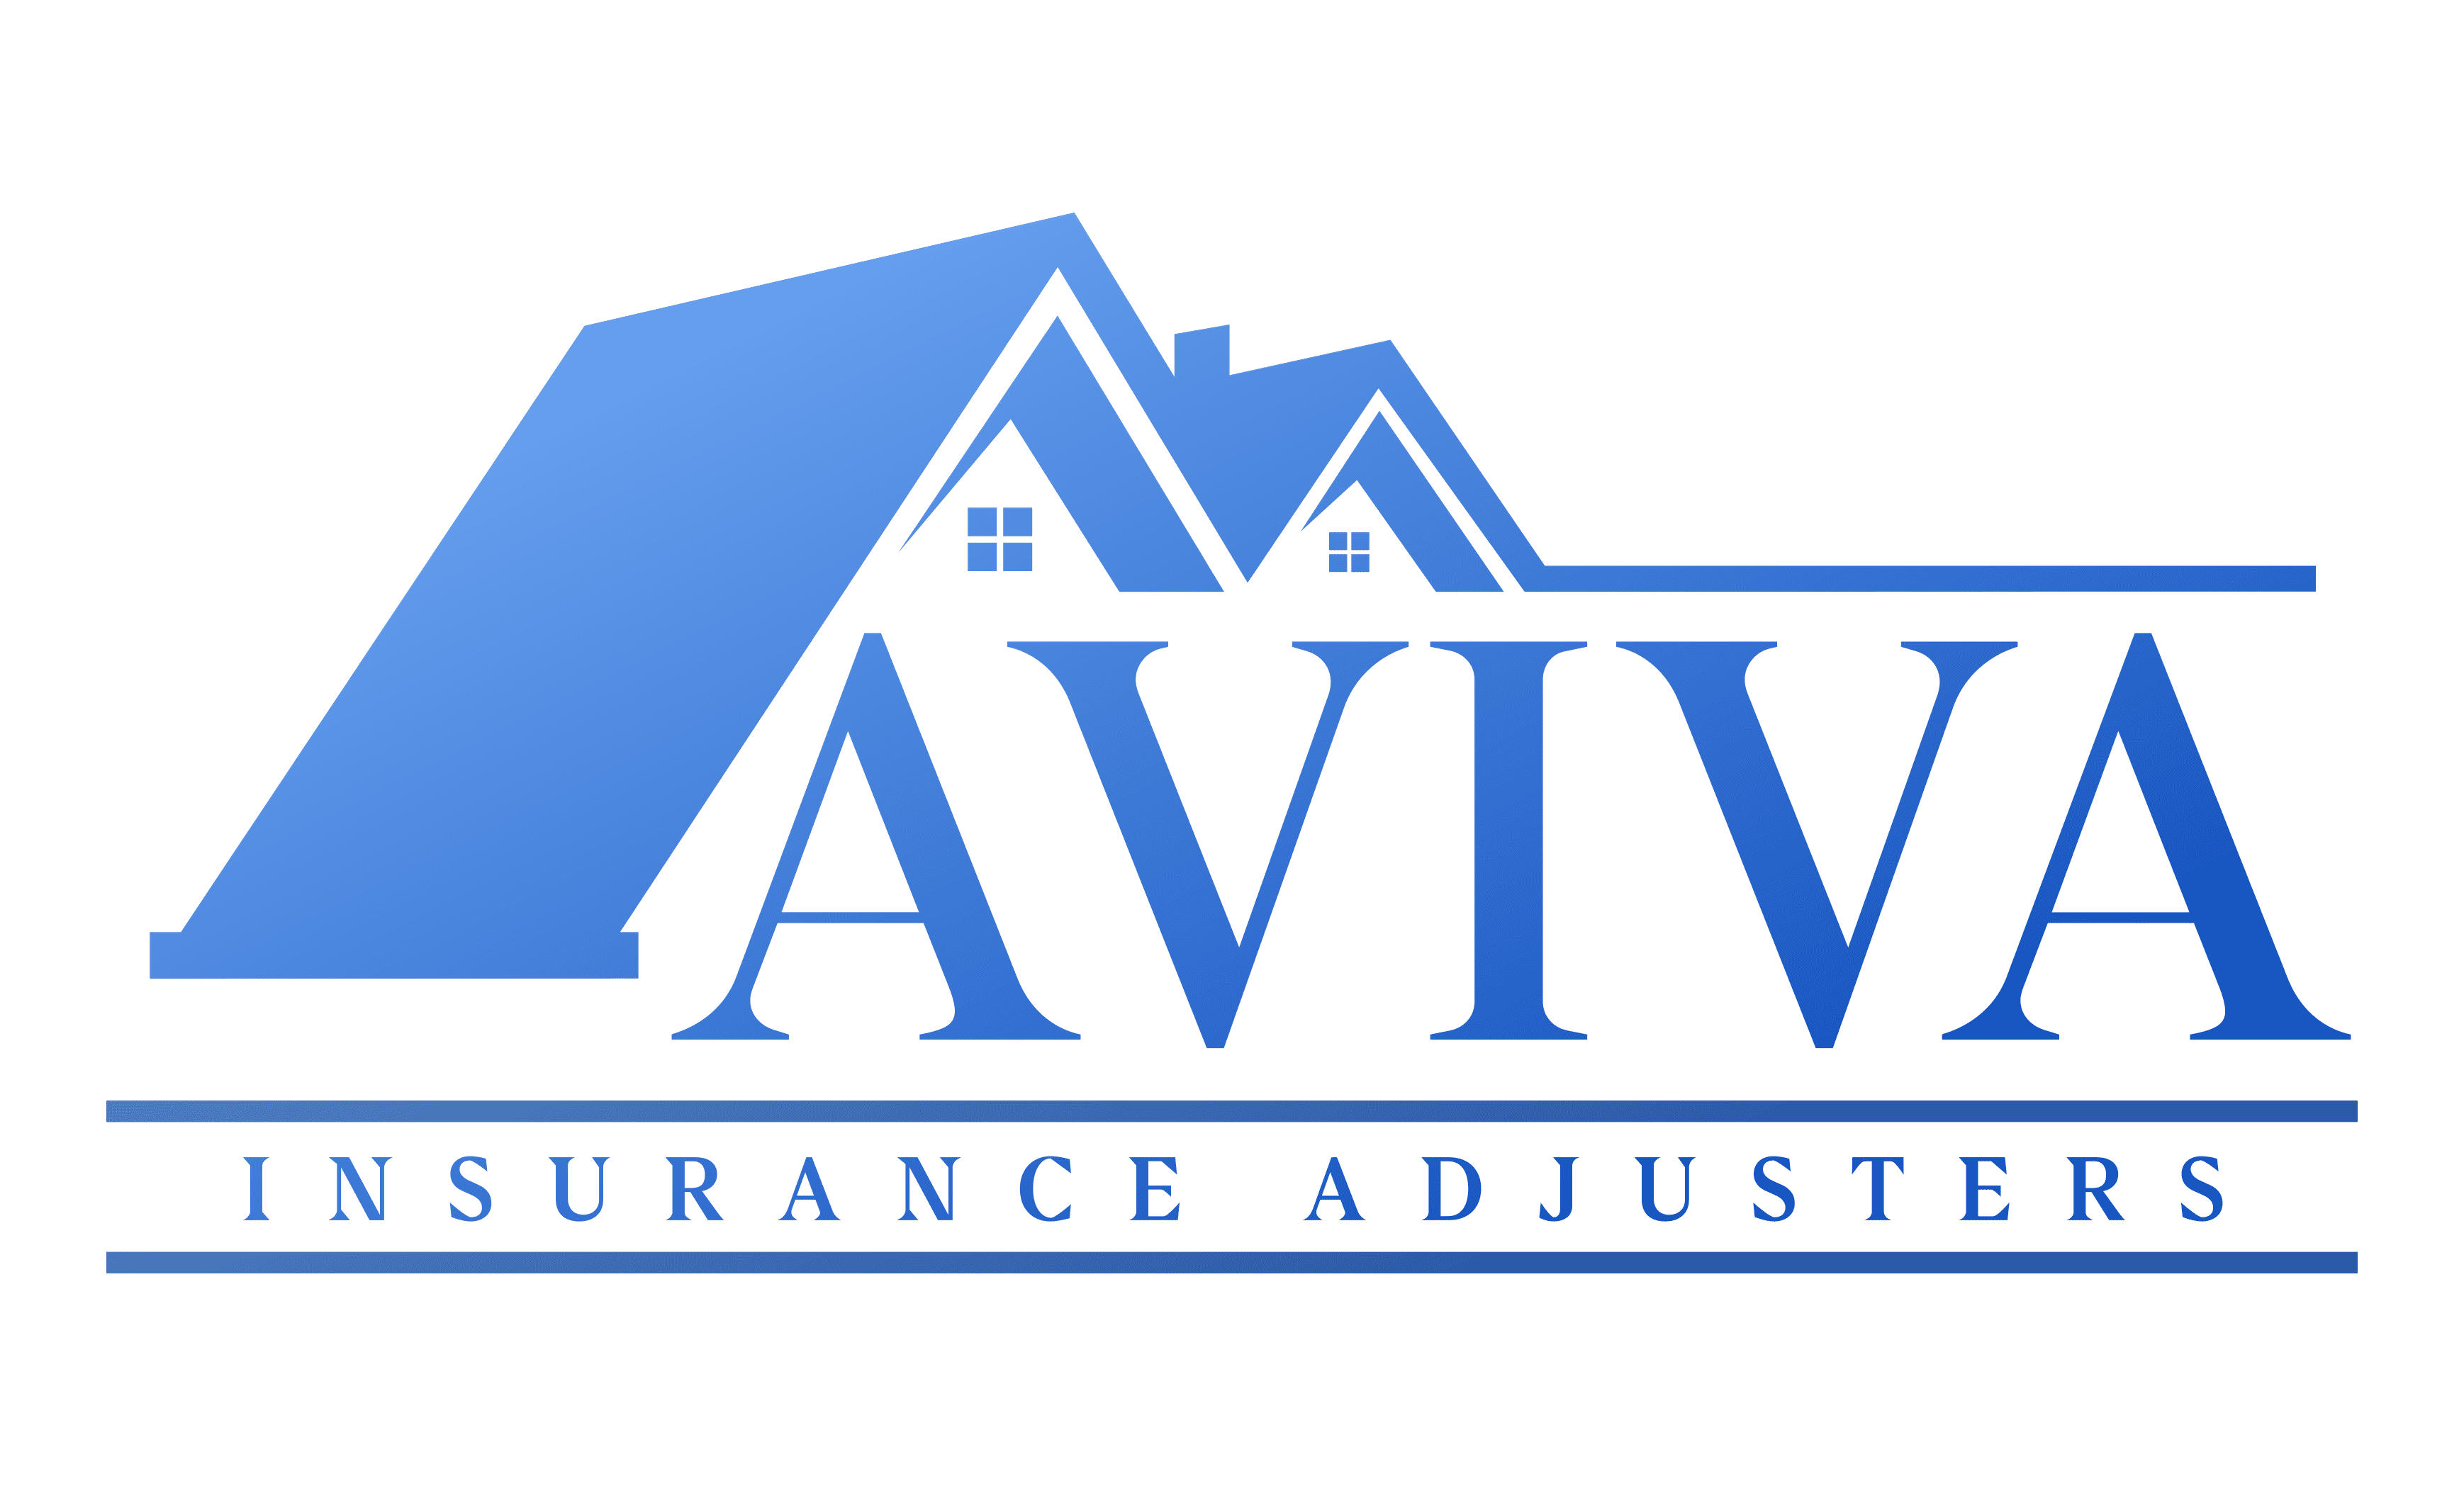 Aviva Logo: Over 28 Royalty-Free Licensable Stock Vectors & Vector Art |  Shutterstock